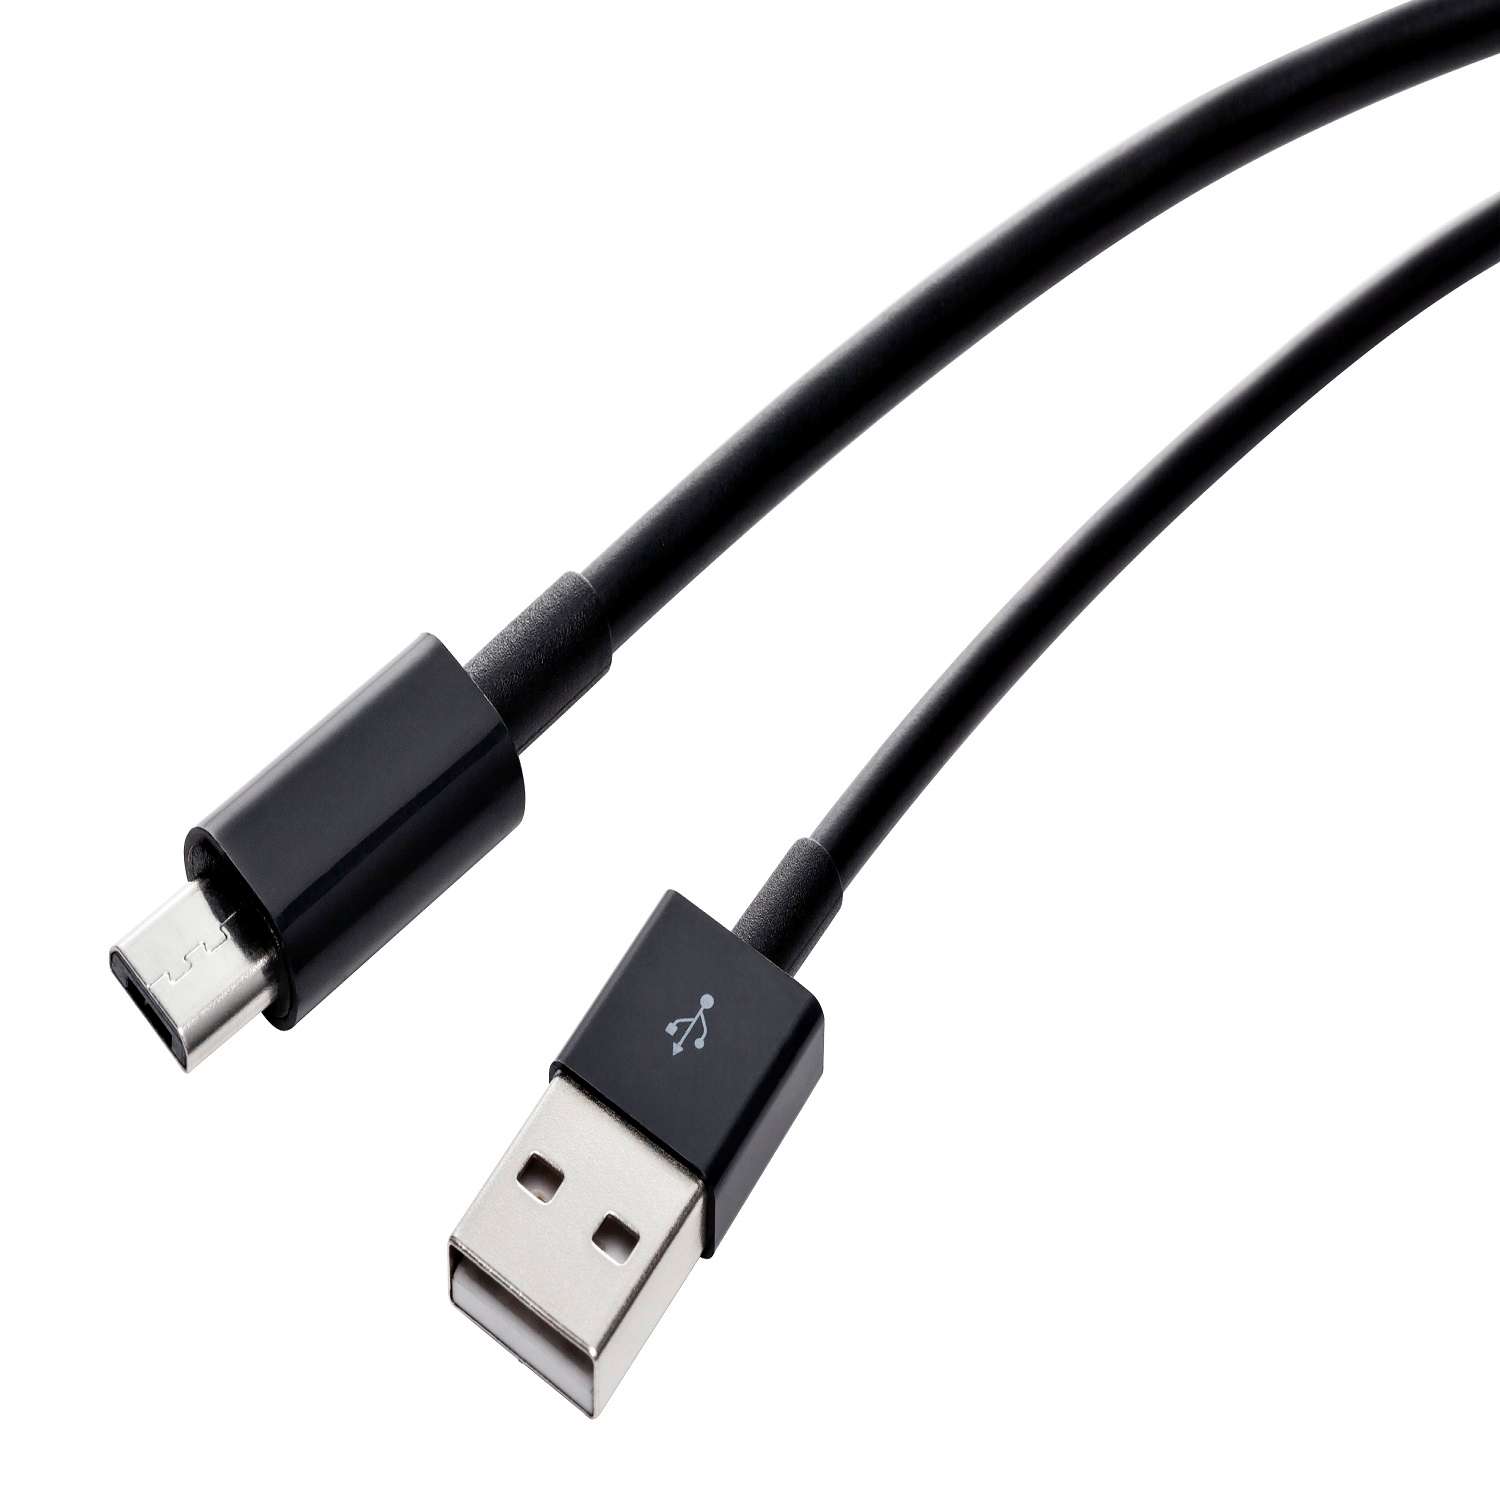 Дата-кабель RedLine USB - micro USB 2 метра черный - фото 2